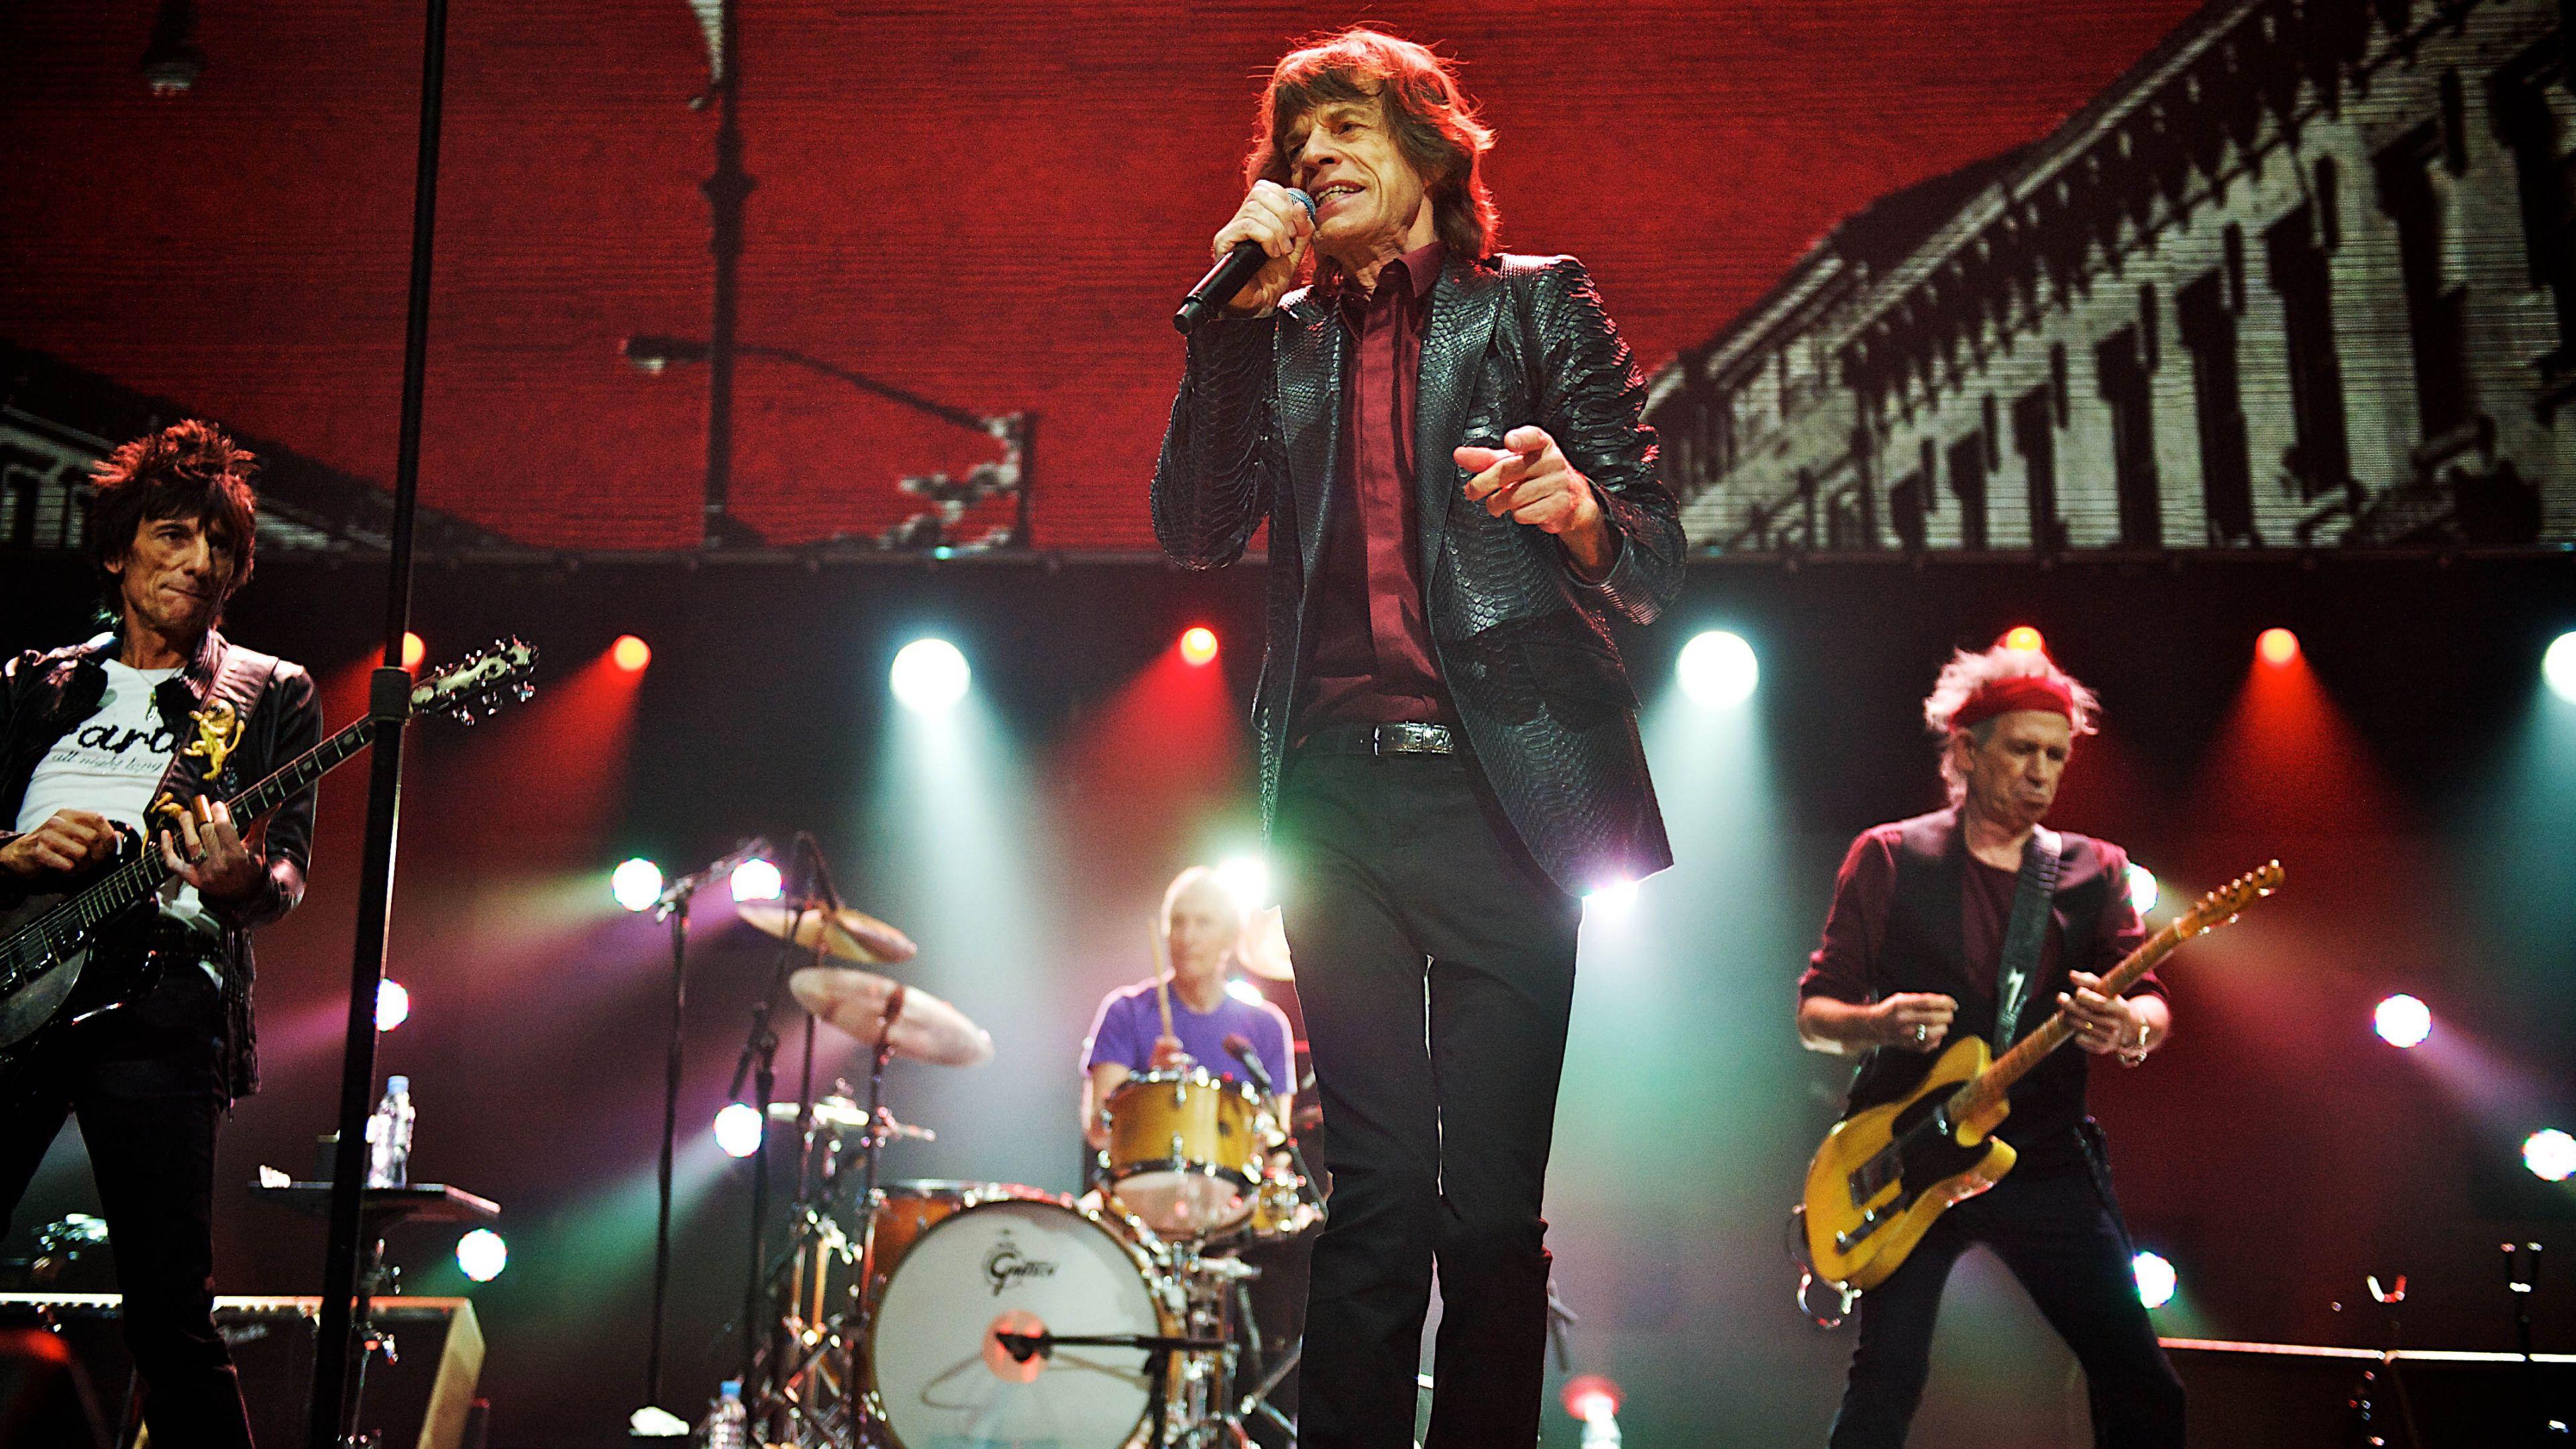 Stones трек. Группа the Rolling Stones. Роллинг стоунз в молодости. Роллинг стоунз 60-е. Группа the Rolling Stones молодые.